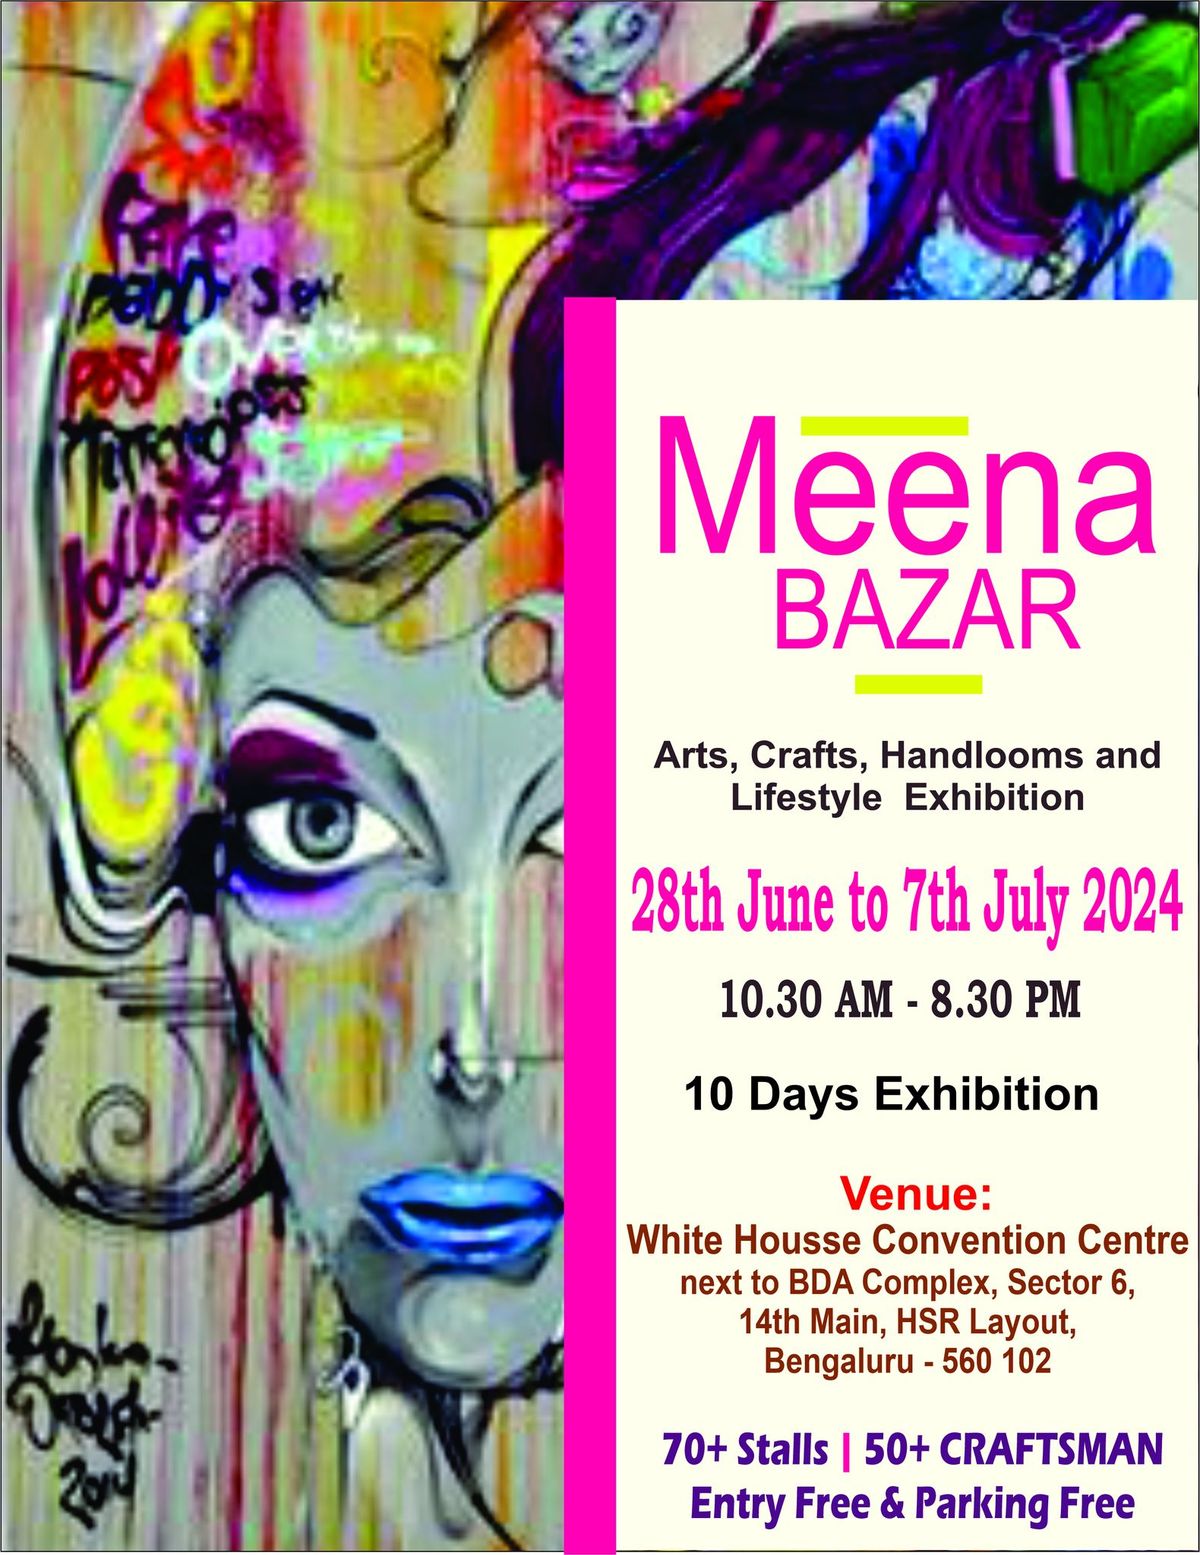 Meena Bazar - Arts, Crafts, Handlooms and Lifestyle Exhibition